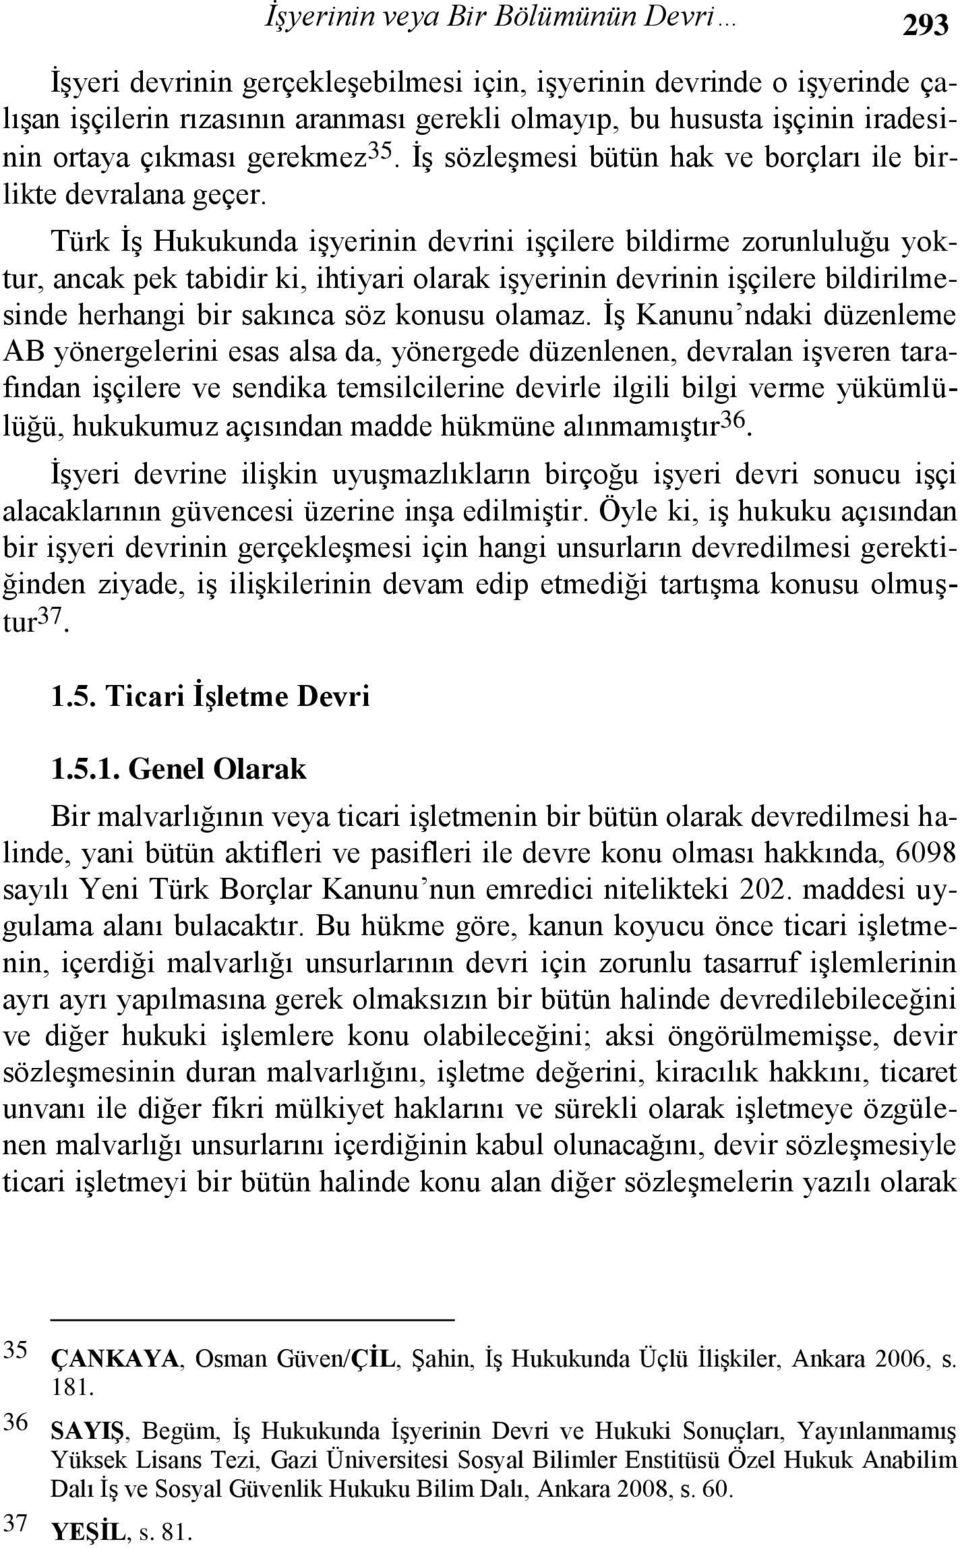 Türk İş Hukukunda işyerinin devrini işçilere bildirme zorunluluğu yoktur, ancak pek tabidir ki, ihtiyari olarak işyerinin devrinin işçilere bildirilmesinde herhangi bir sakınca söz konusu olamaz.